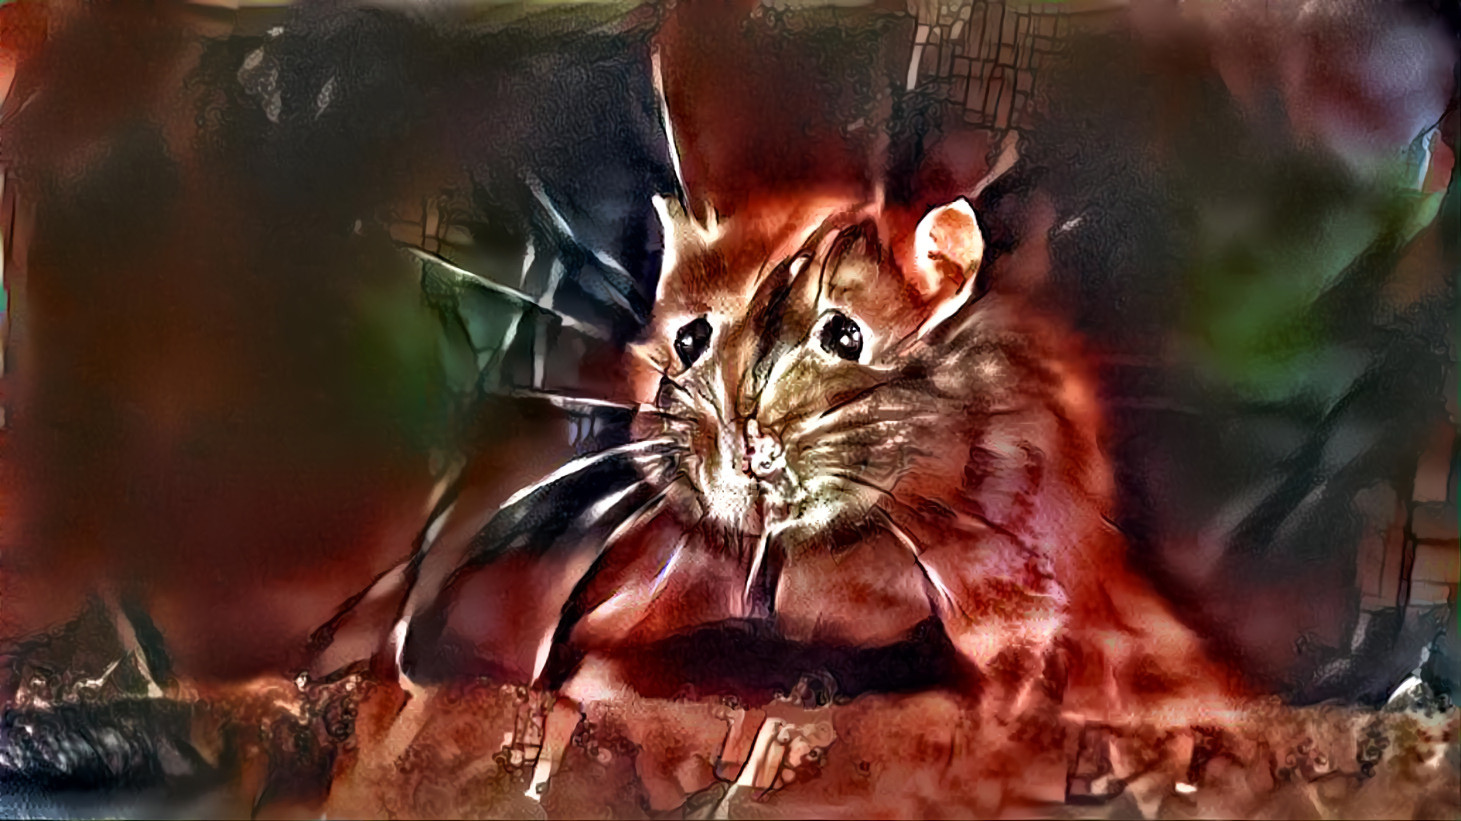 Mr Rat